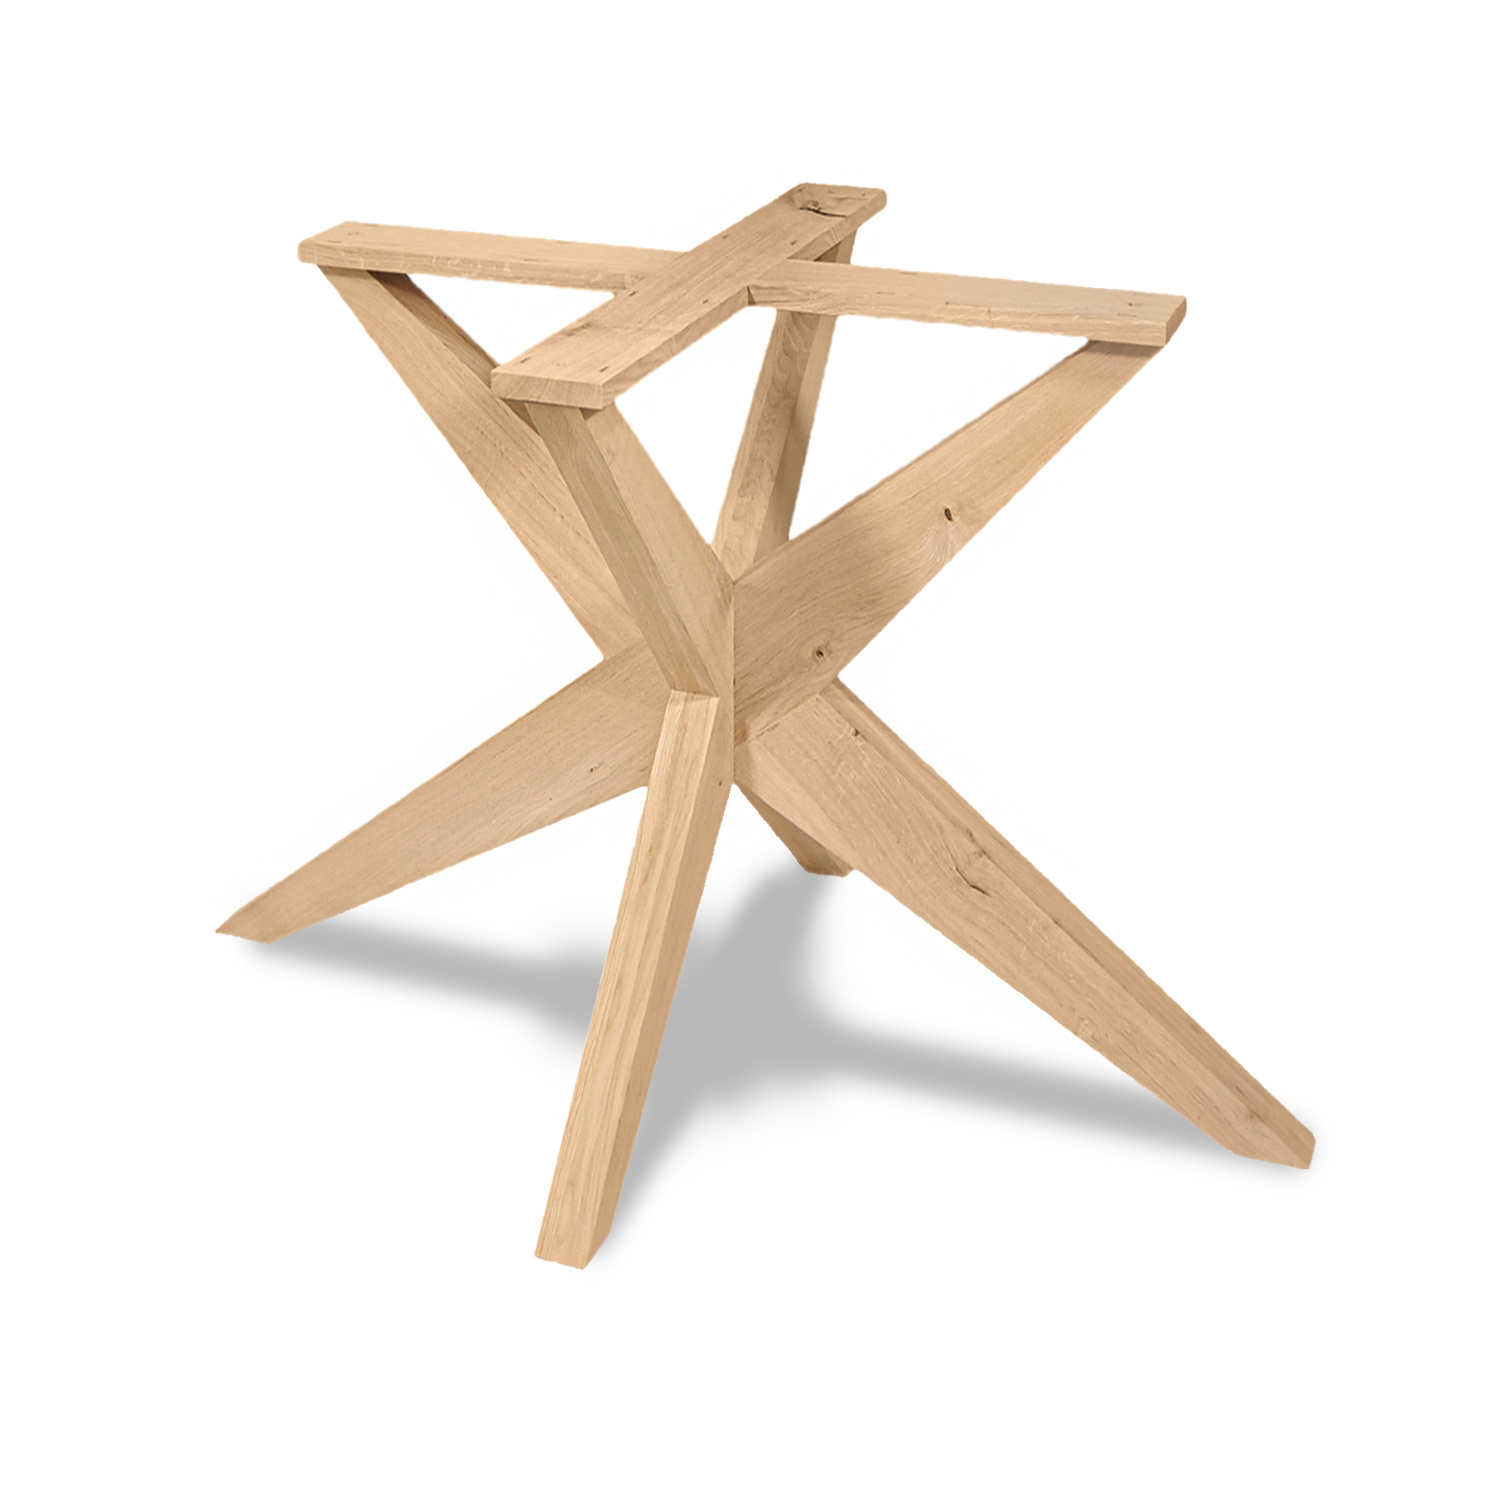  Tischgestell Eiche Doppelt X  - schräge Beine - 90x90 cm  - 72 cm hoch - Eichenholz Rustikal - massives Tischunterstell rund (Mittelfuß) - Künstlich getrocknet HF 12%